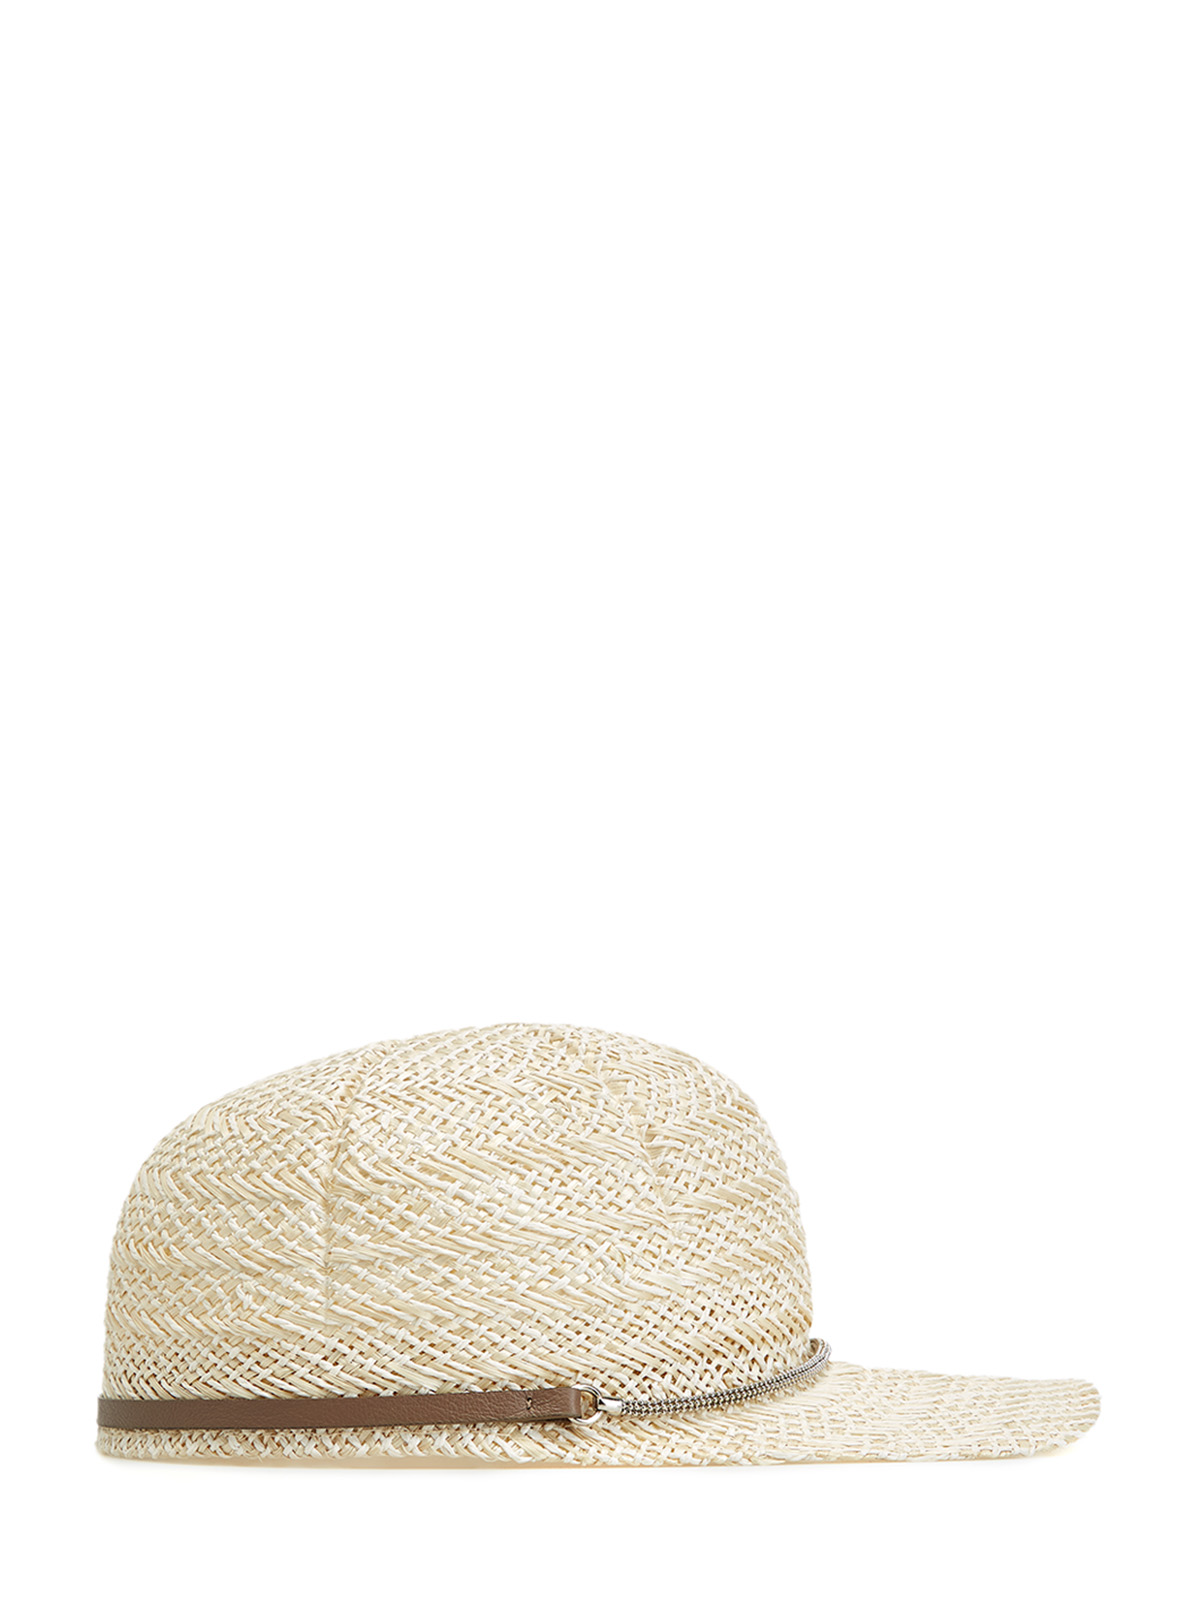 Плетеная кепка с кожаным ремешком и цепочками PESERICO, цвет бежевый, размер M;L - фото 2